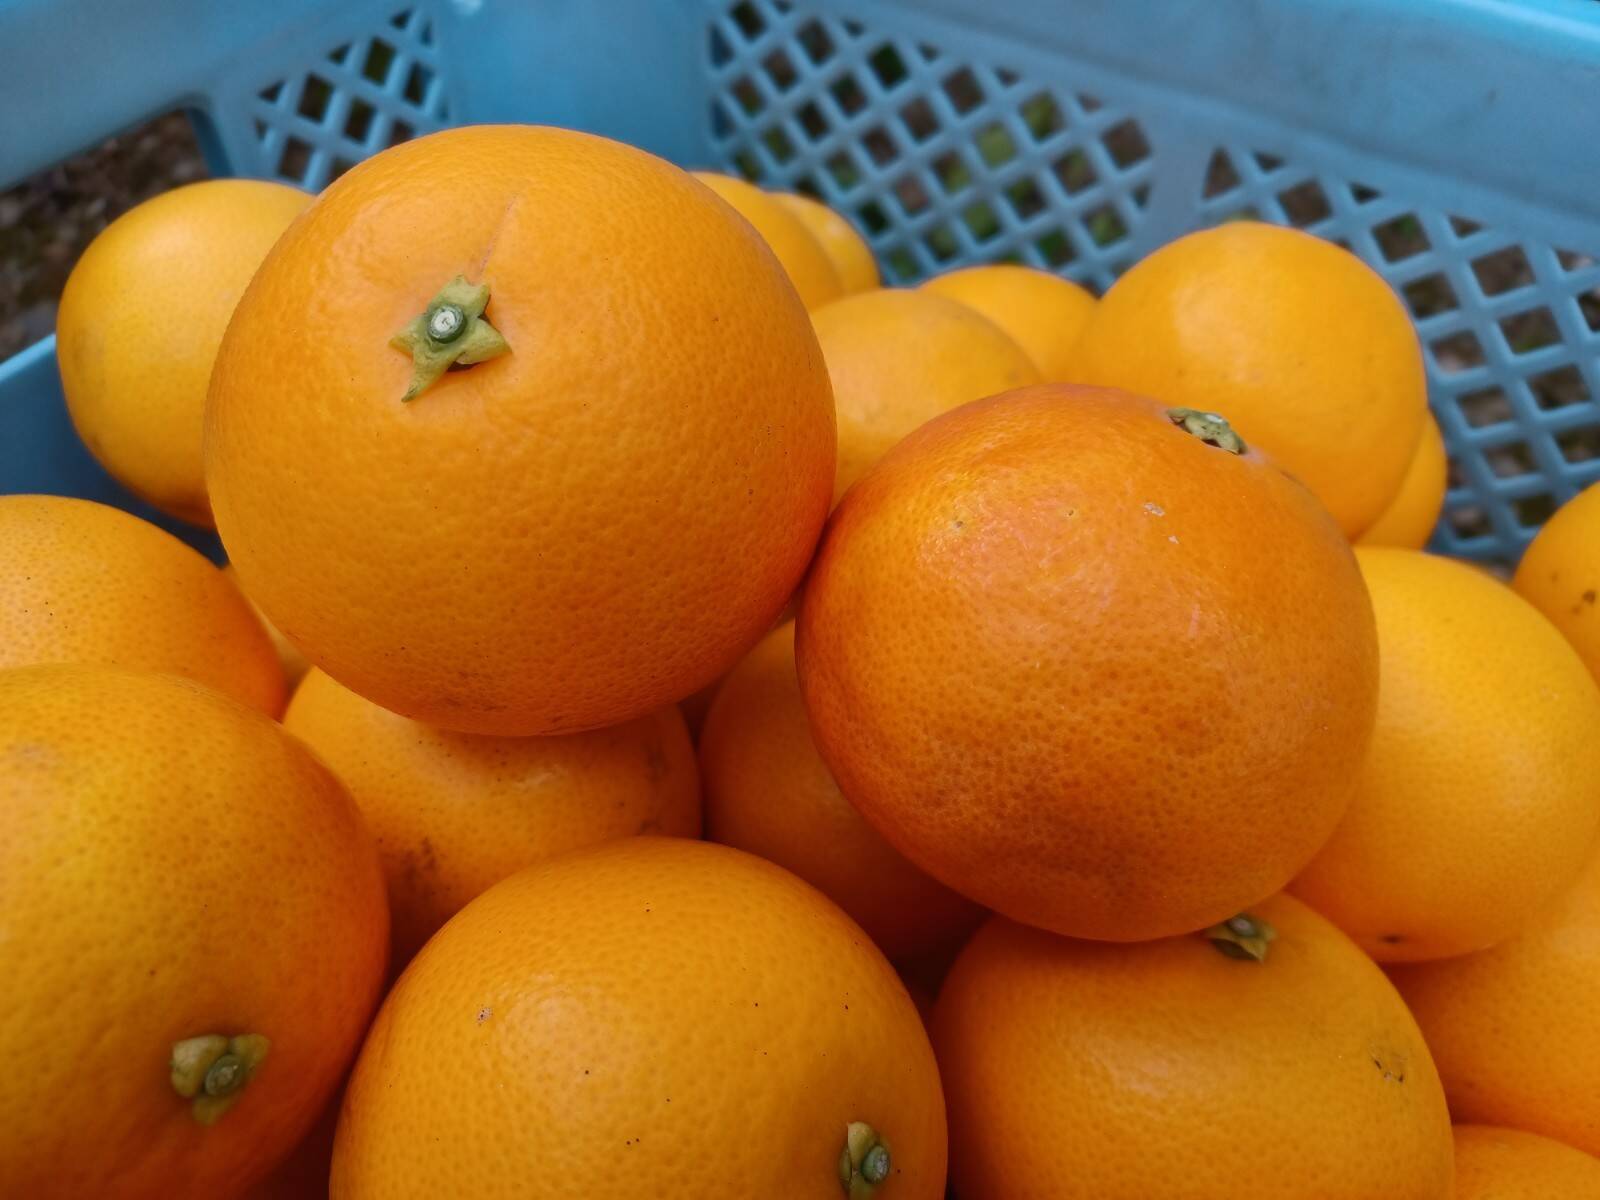 ブラッドオレンジ サイズ混合 国産 静岡県浜松市産 約10kg 静岡県産の果物 食べチョク 産地直送 産直 お取り寄せ通販 農家 漁師から旬の食材を直送